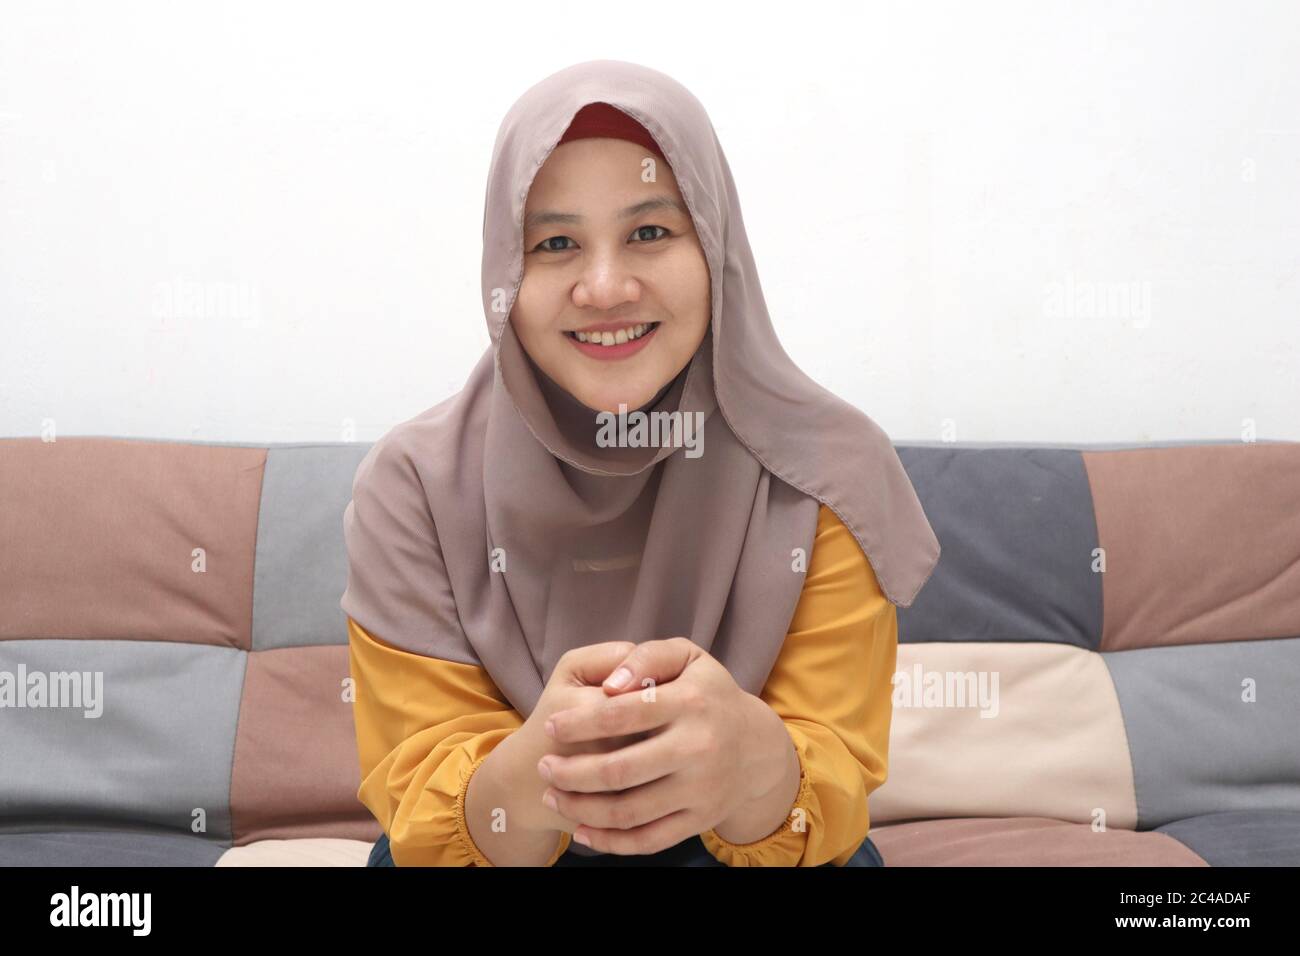 Schöne asiatische muslimische Dame tun Selfie Porträt am Telefon oder tun Videoanruf, während auf dem Sofa sitzen, glücklich lächelnd fröhlichen Ausdruck Stockfoto